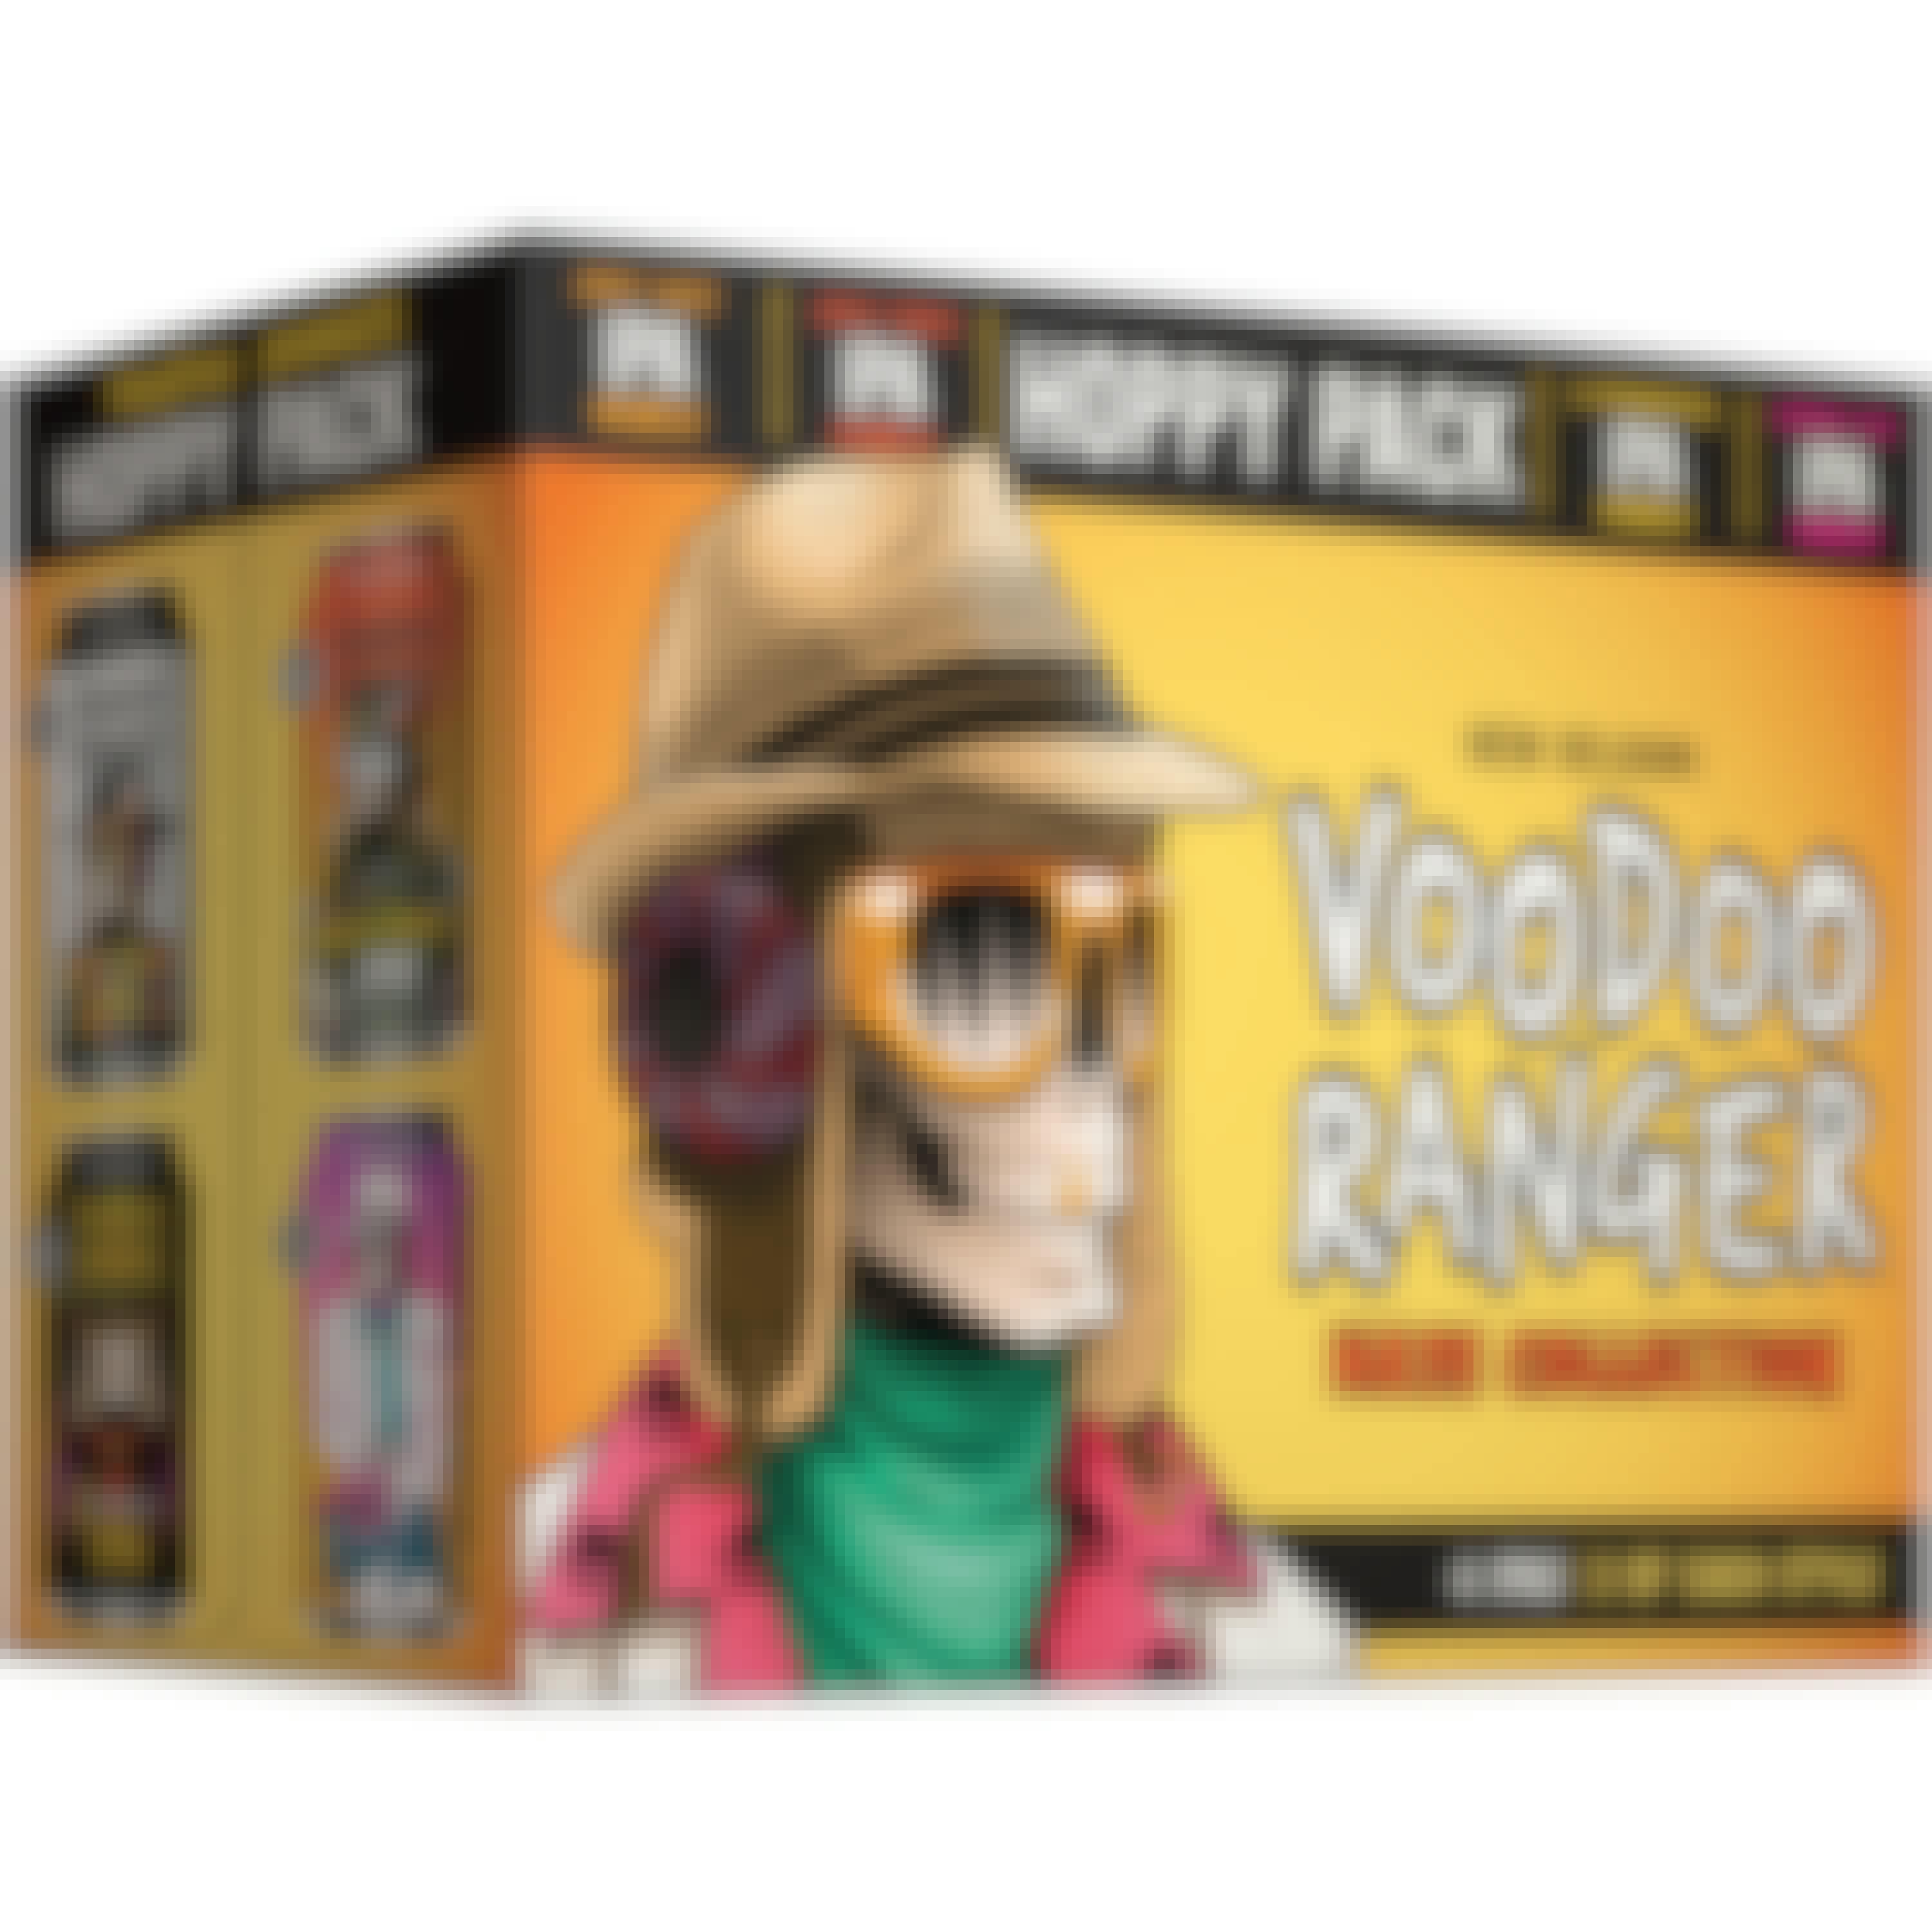 New Belgium Voodoo Ranger Hoppy Variety Pack 12 pack Bottle